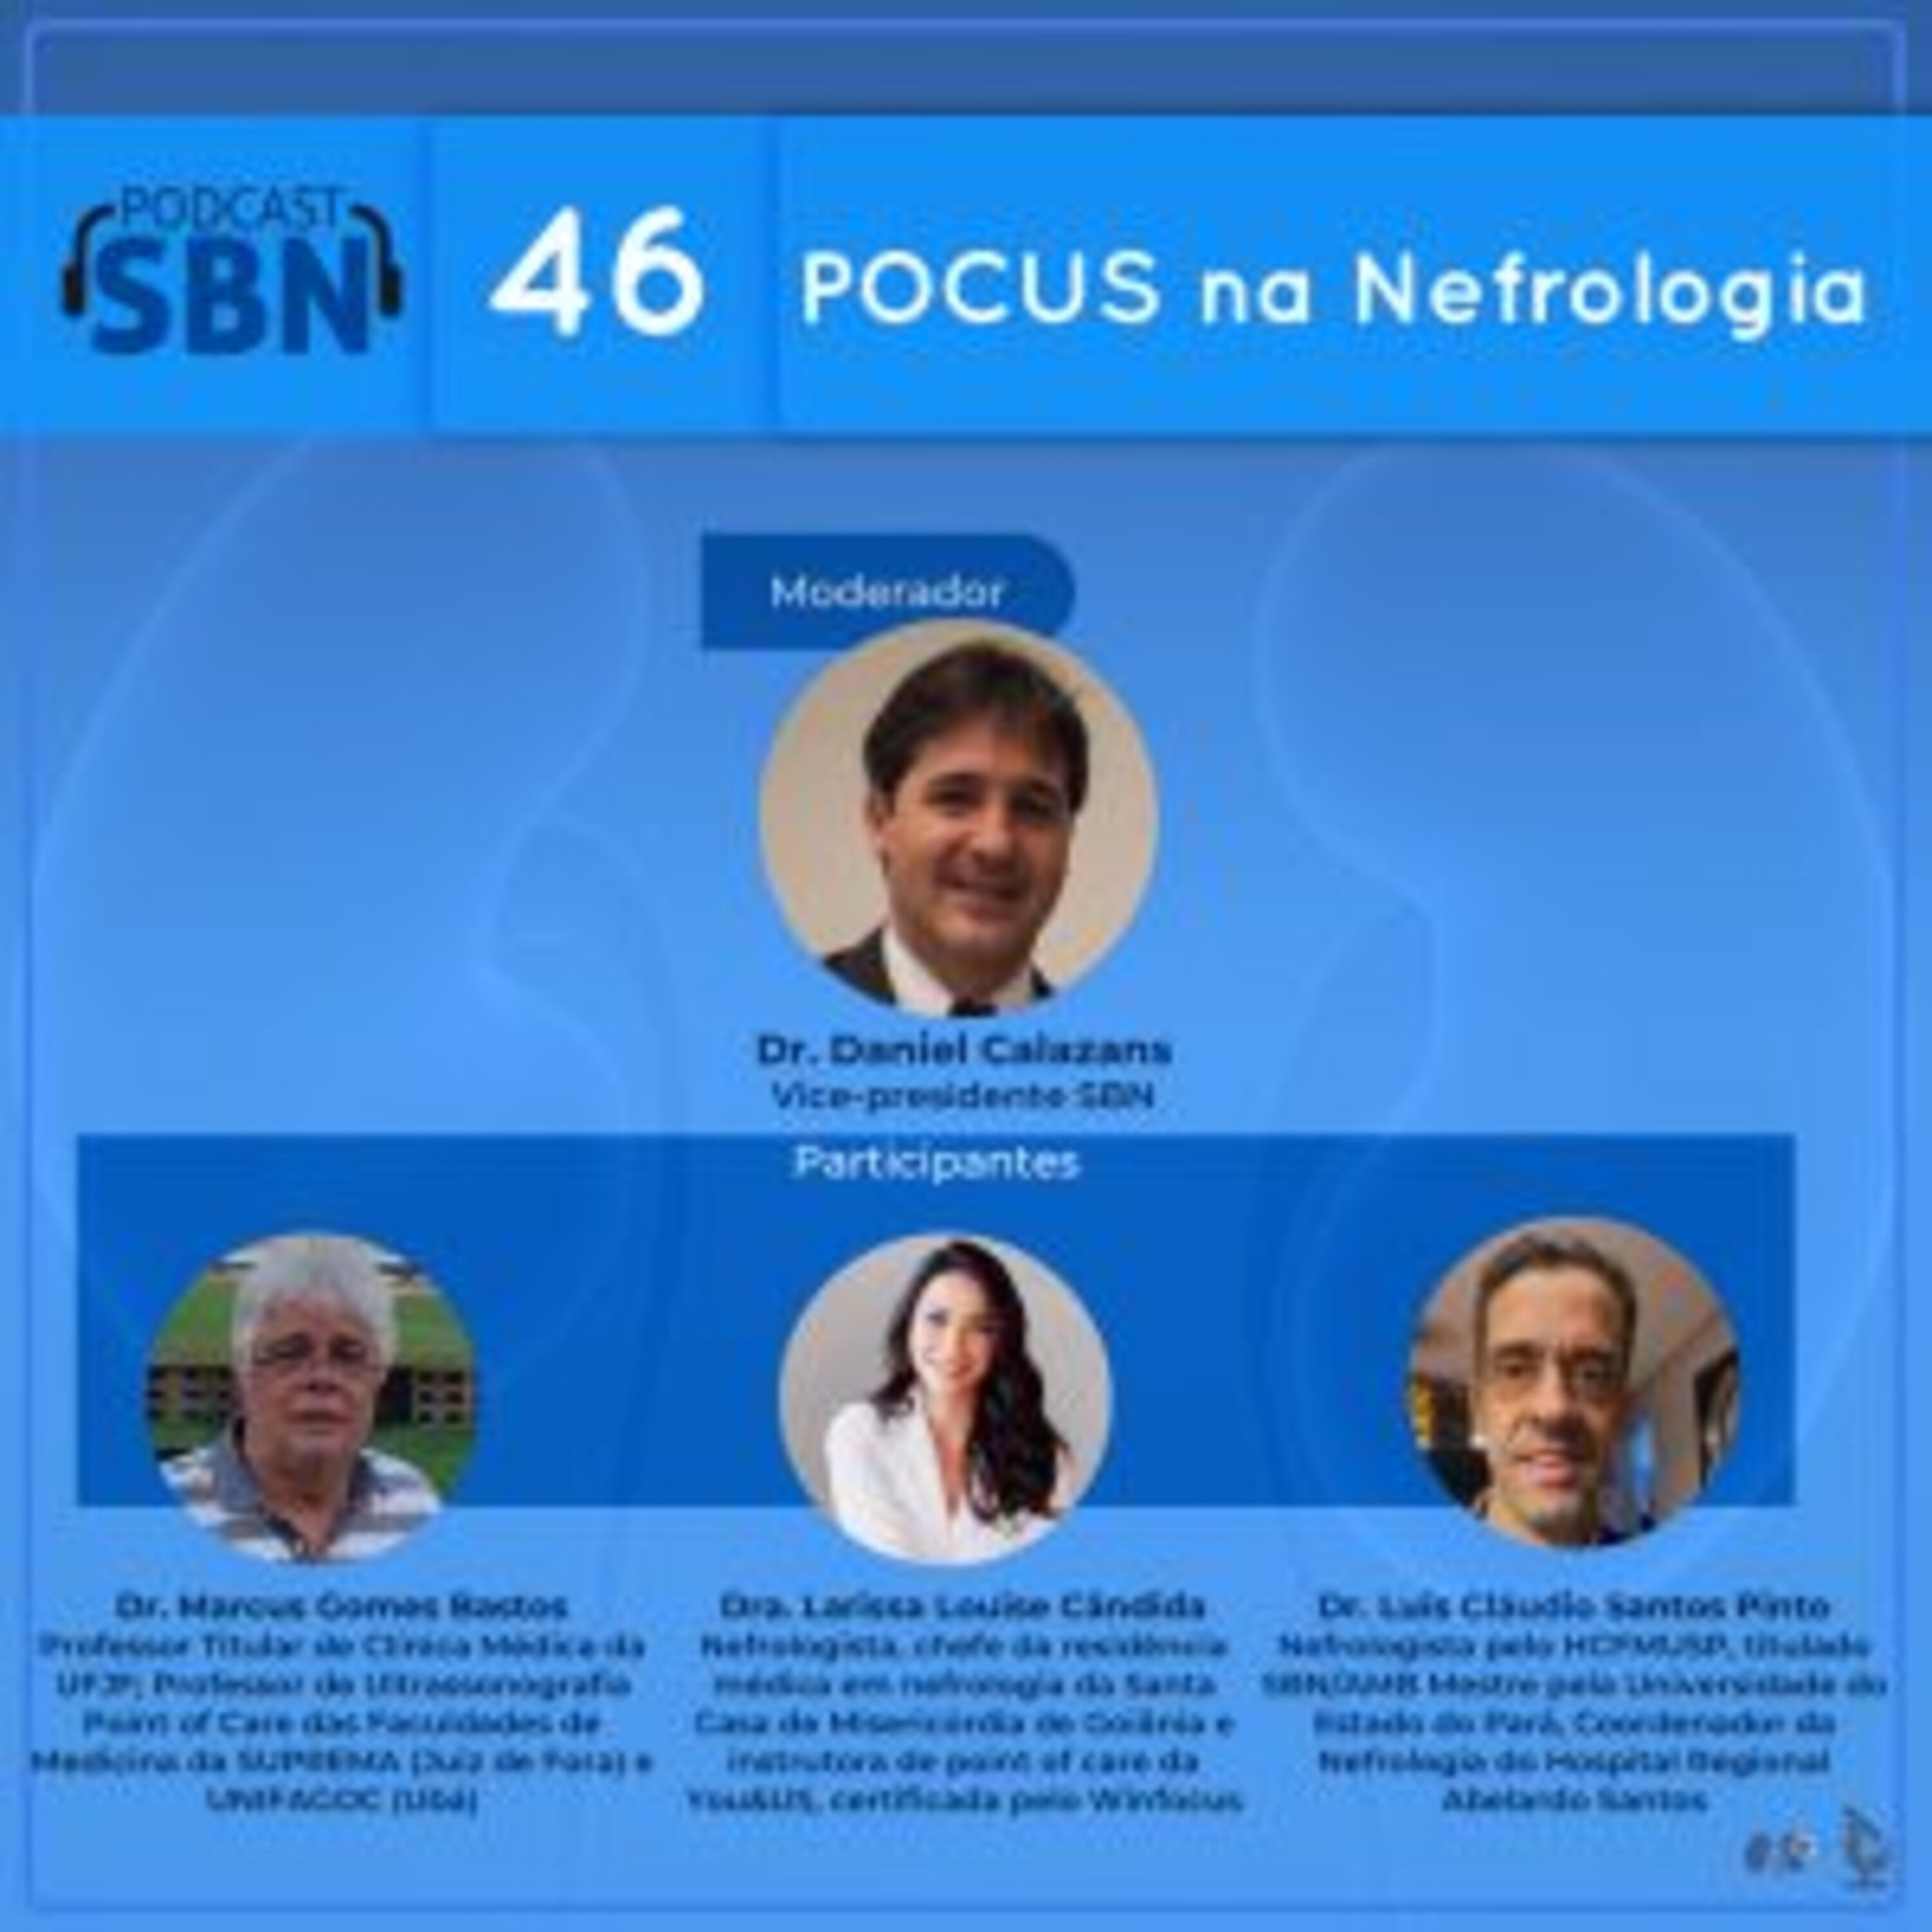 POCUS e a Nefrologia (SBN #46)